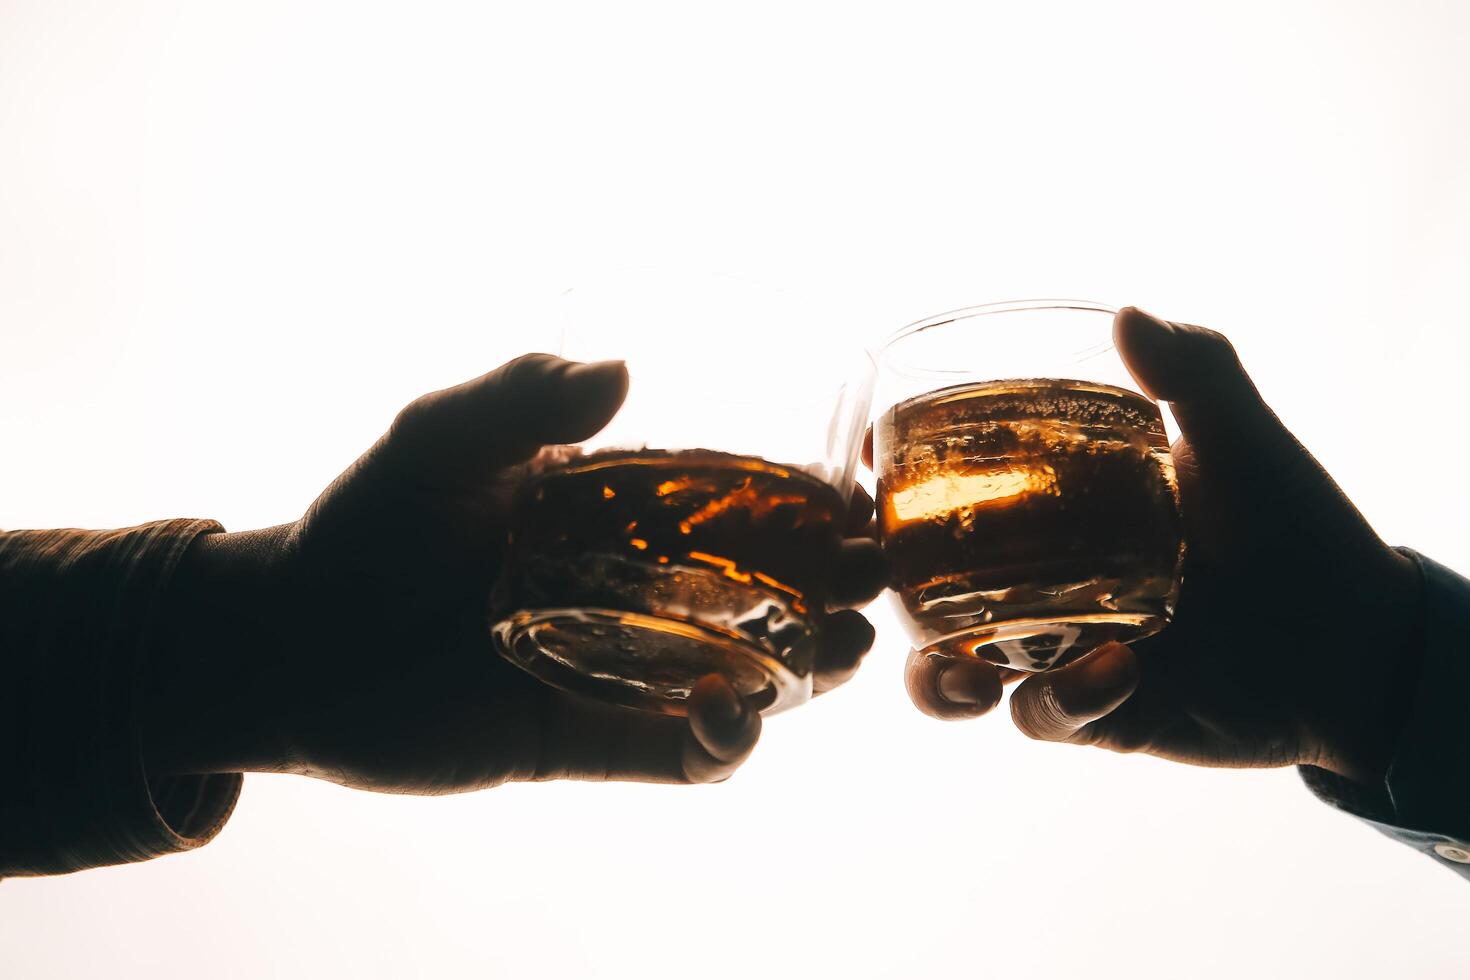 Whiskey splashing out of glass, isolated on white background photo